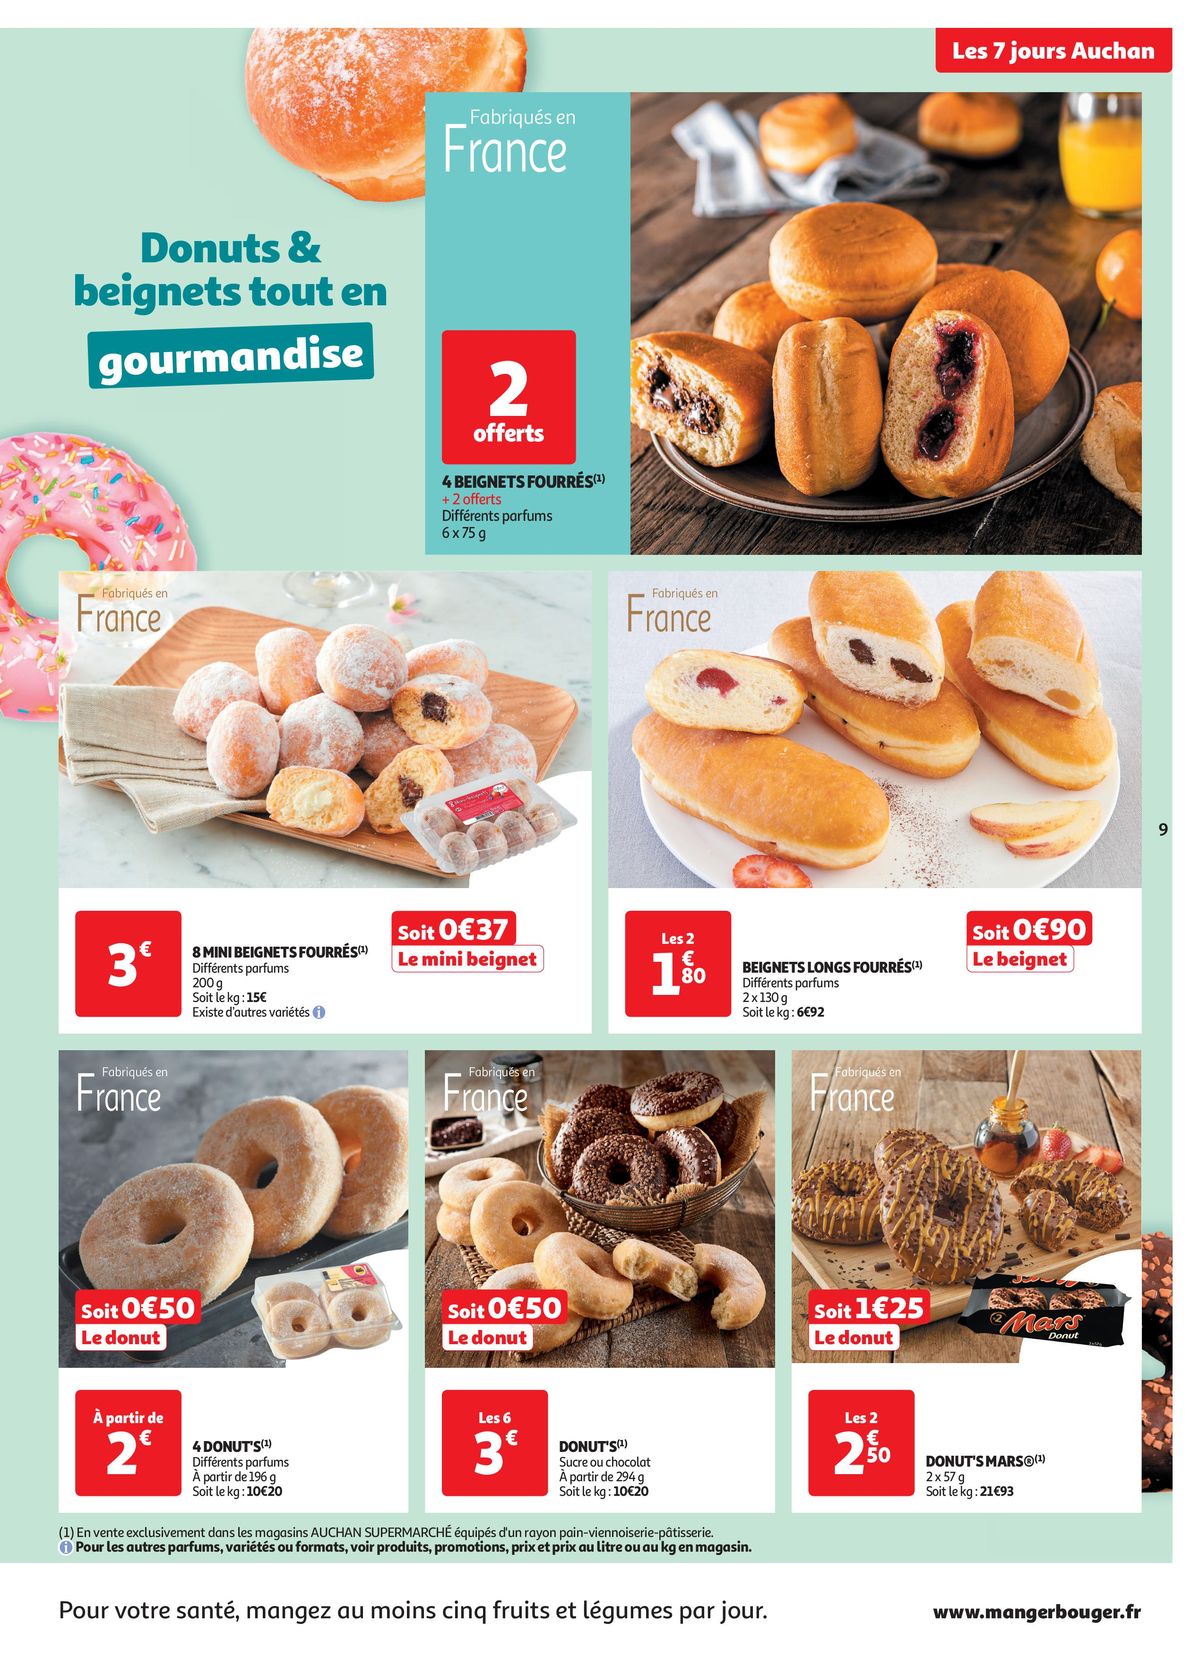 Catalogue C'est les 7 jours Auchan dans votre super !, page 00009